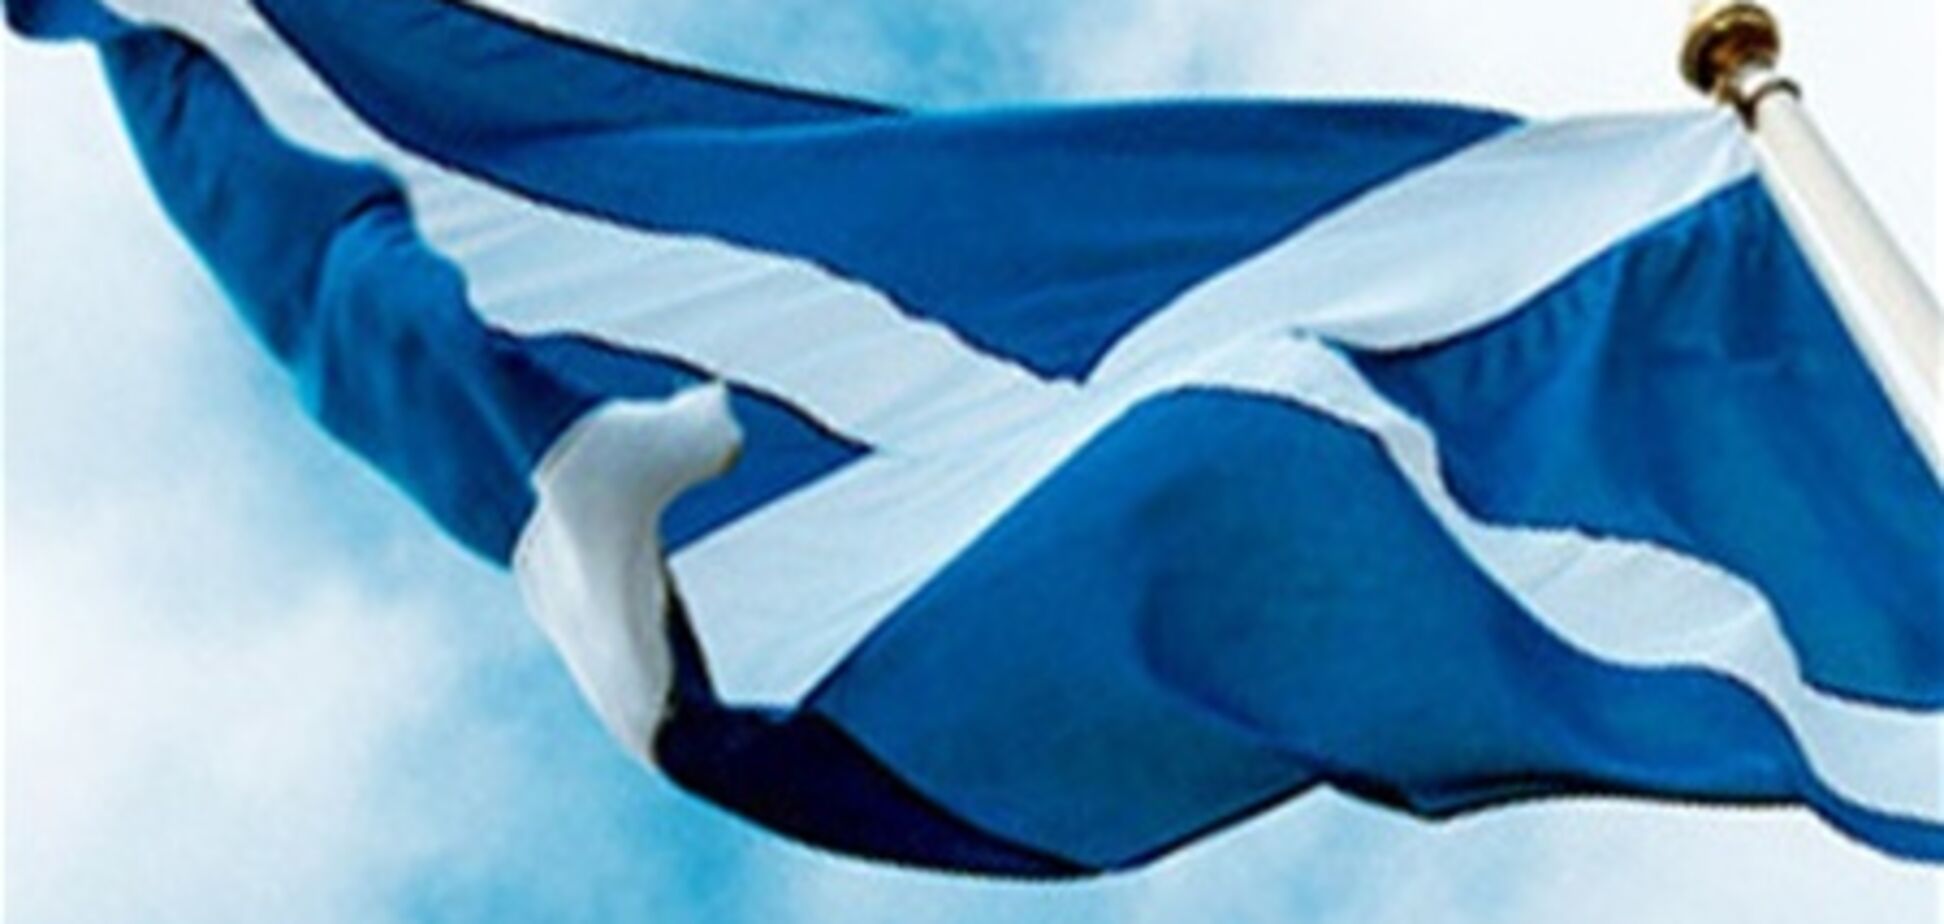 Лондон опублковал доповідь проти незалежності Шотландії